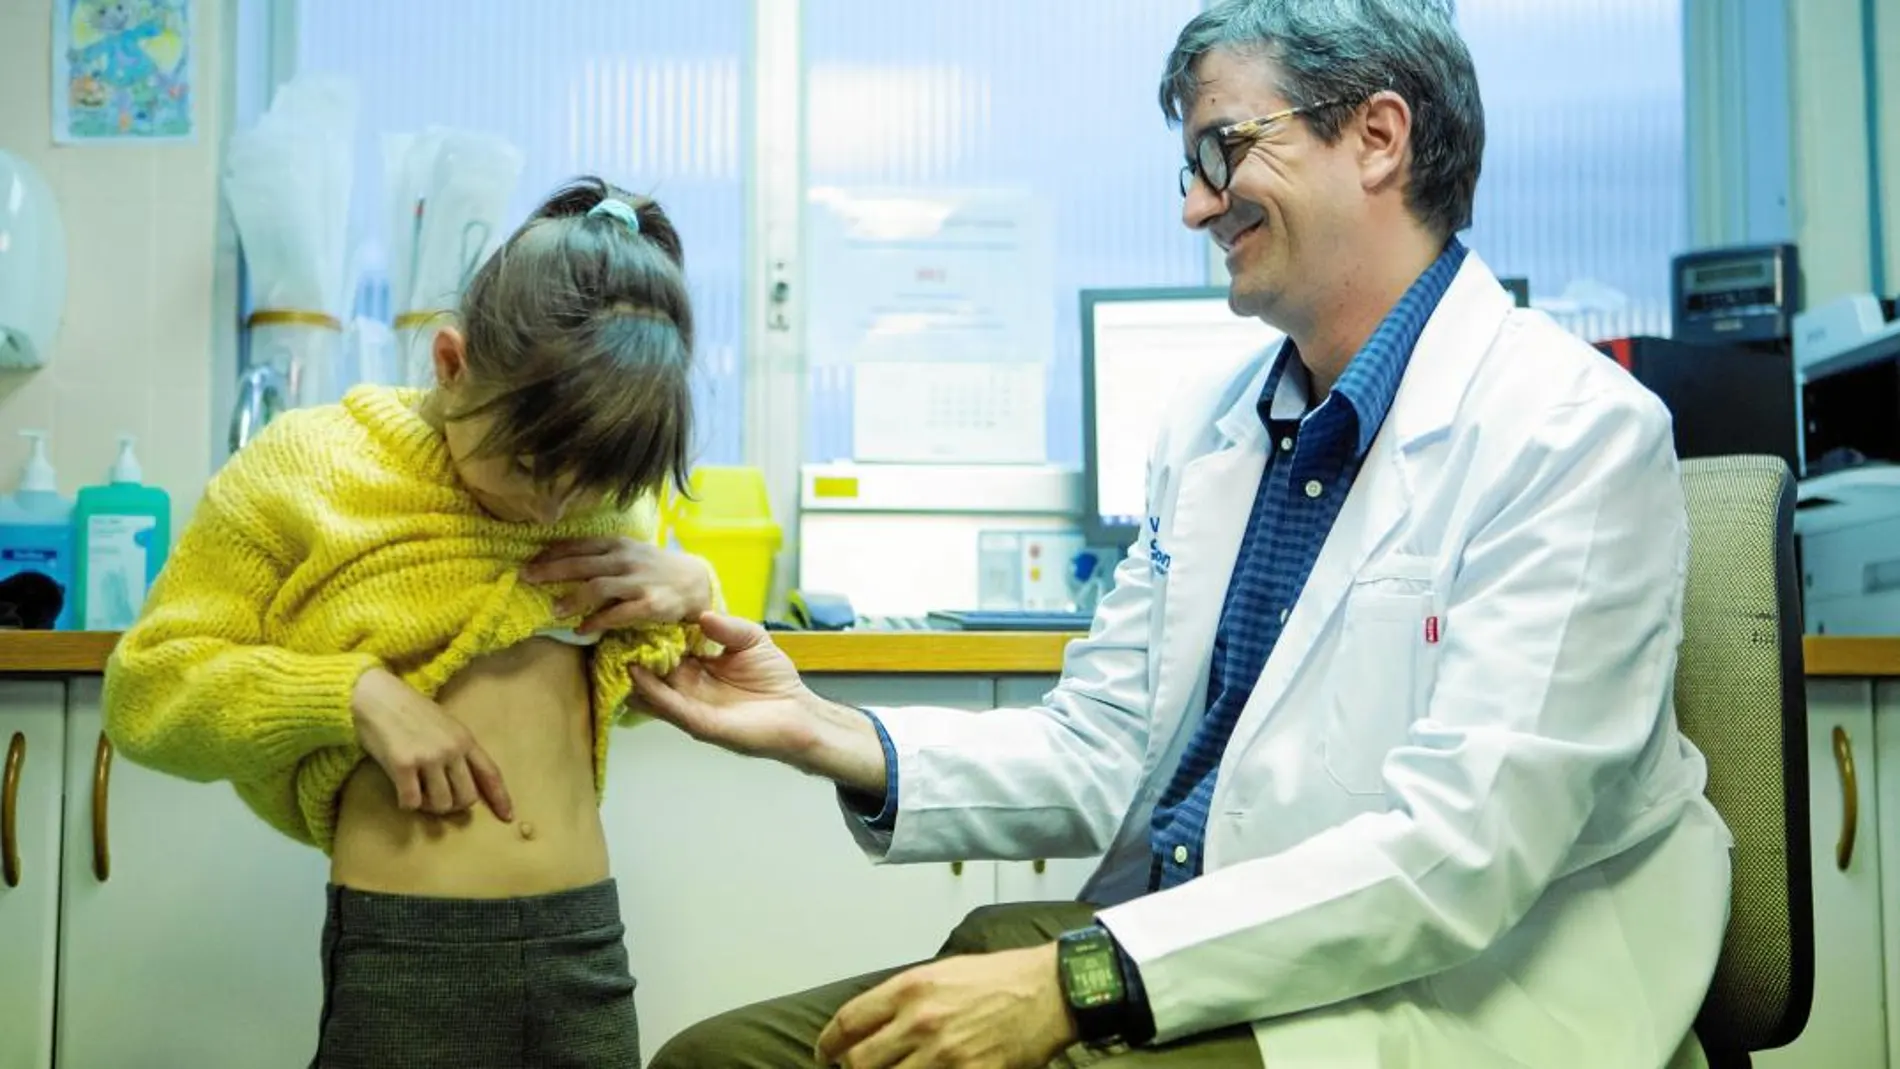 Alba muestra al doctor Carles Giné, jefe de la Unidad de Cirugía Digestiva y Torácica Pediátricas del Vall d'Hebron, su ombligo, por donde el cirujano extrajo con la técnica quirúrgica con imanes la vesícula biliar